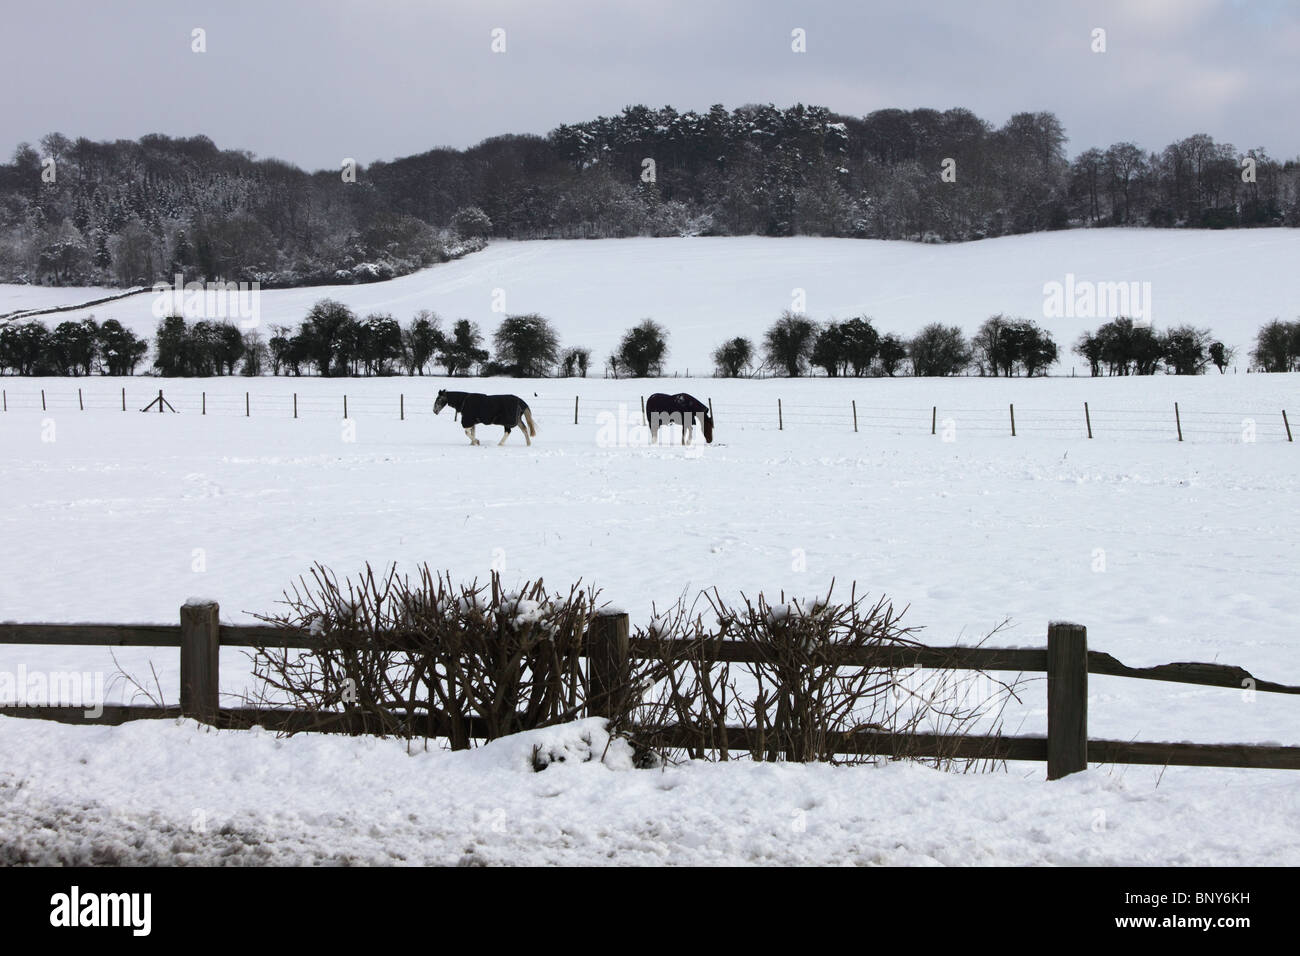 Cavalli nella neve in campo con Chiltern Hills dietro in corrispondenza di estremità di fresa, Hambleden, Buckinghamshire, Inghilterra, Regno Unito, inverno Foto Stock